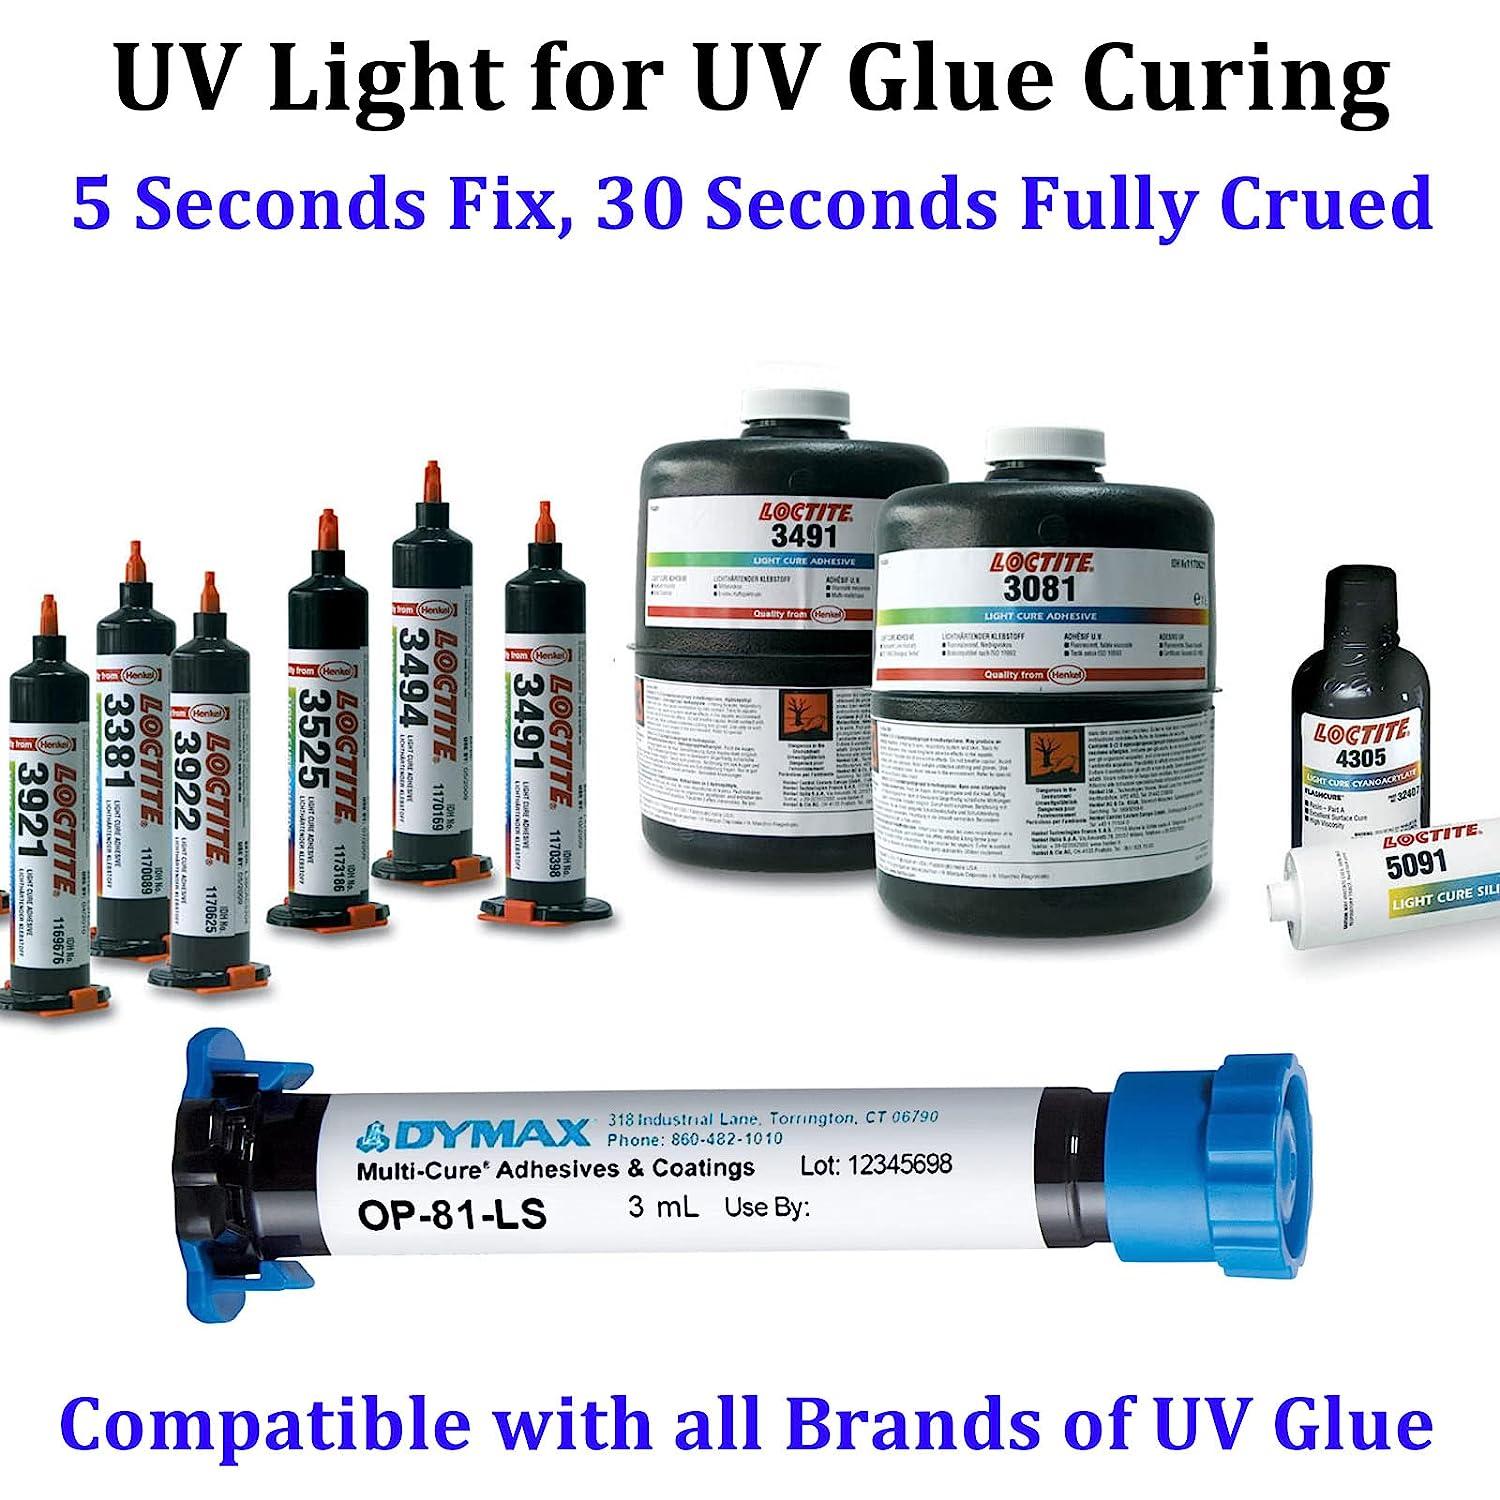 Uv Curing Light for Resin,Uv Resin Light Curing for Epoxy Crafts,Uv Resin  Curing Light Box for LCD SLA Dlp 3D Resin Printer 405nm,Large Uv Light for